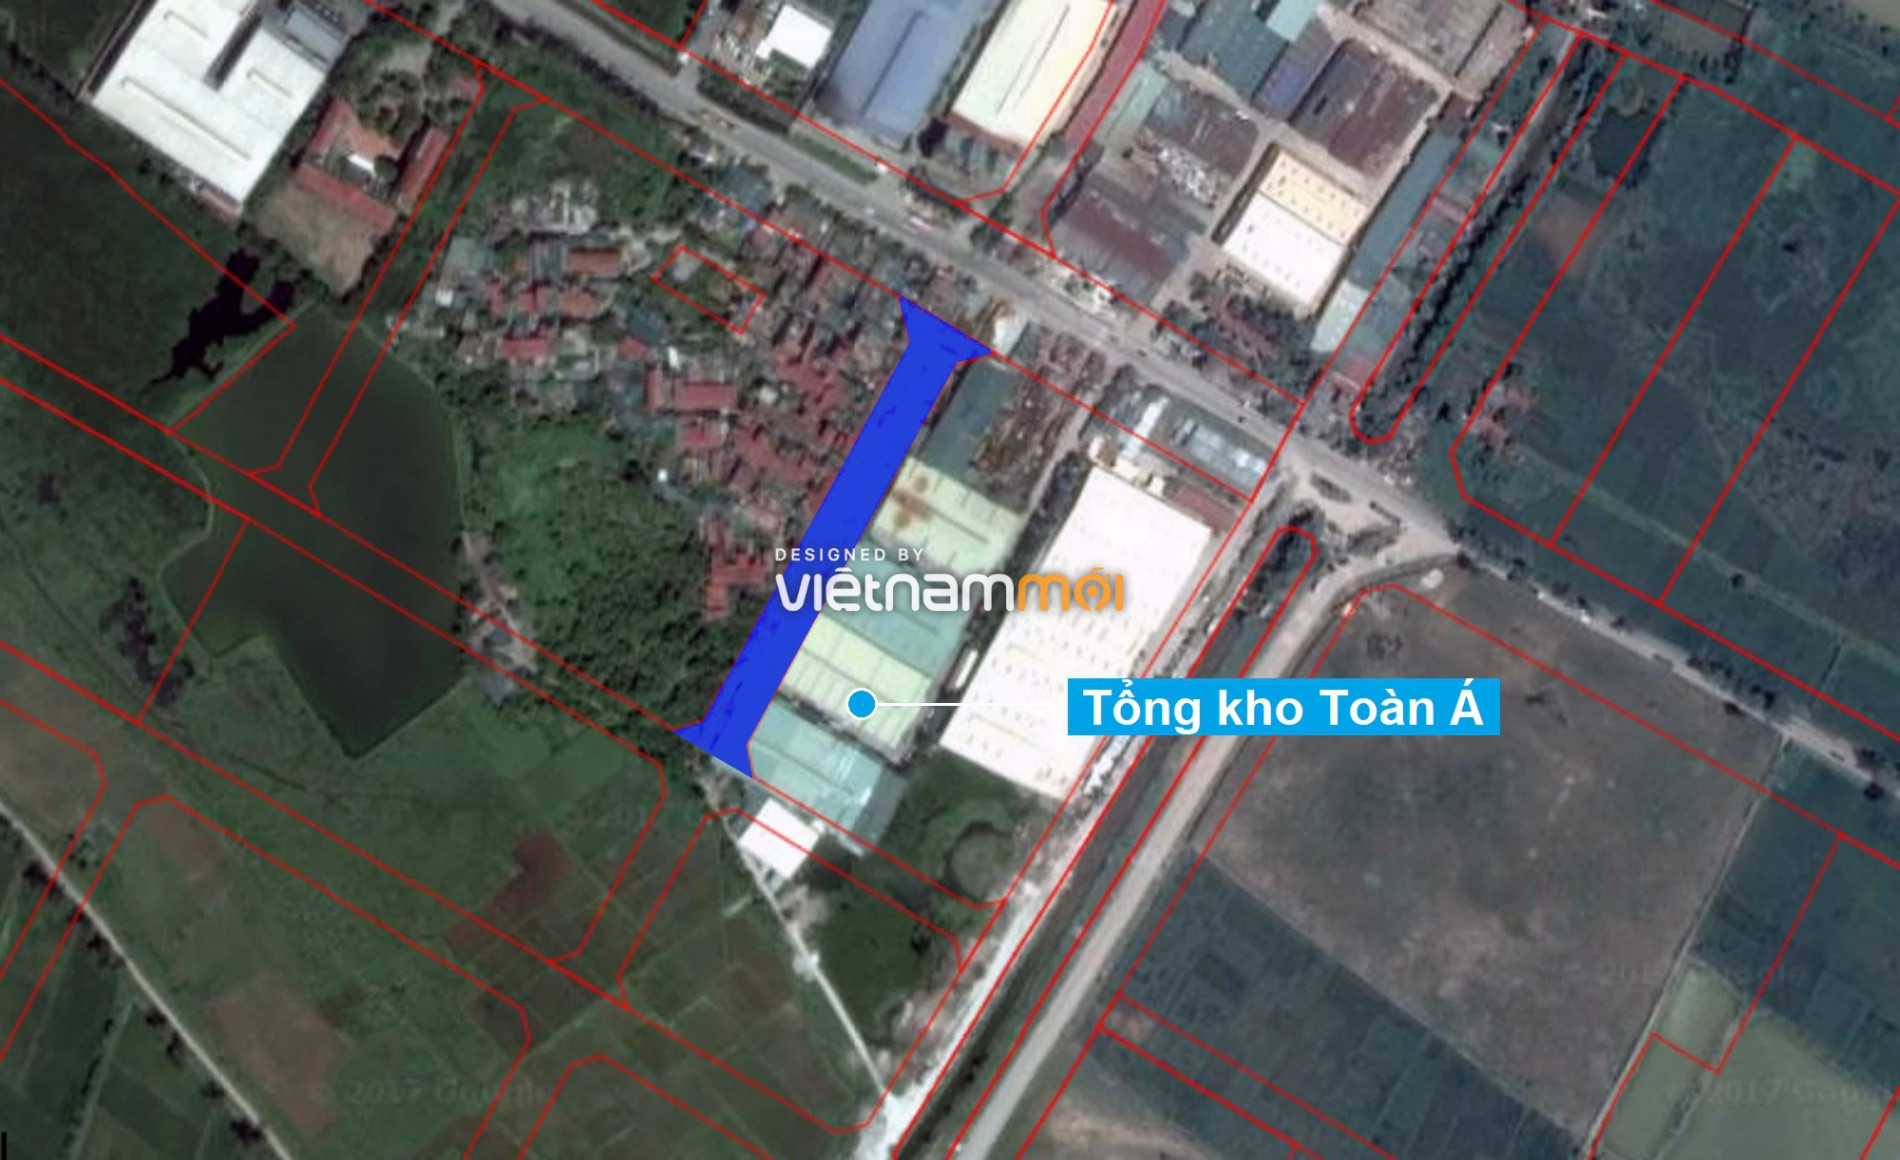 Những khu đất sắp thu hồi để mở đường ở xã Thanh Liệt, Thanh Trì, Hà Nội (phần 6) - Ảnh 8.